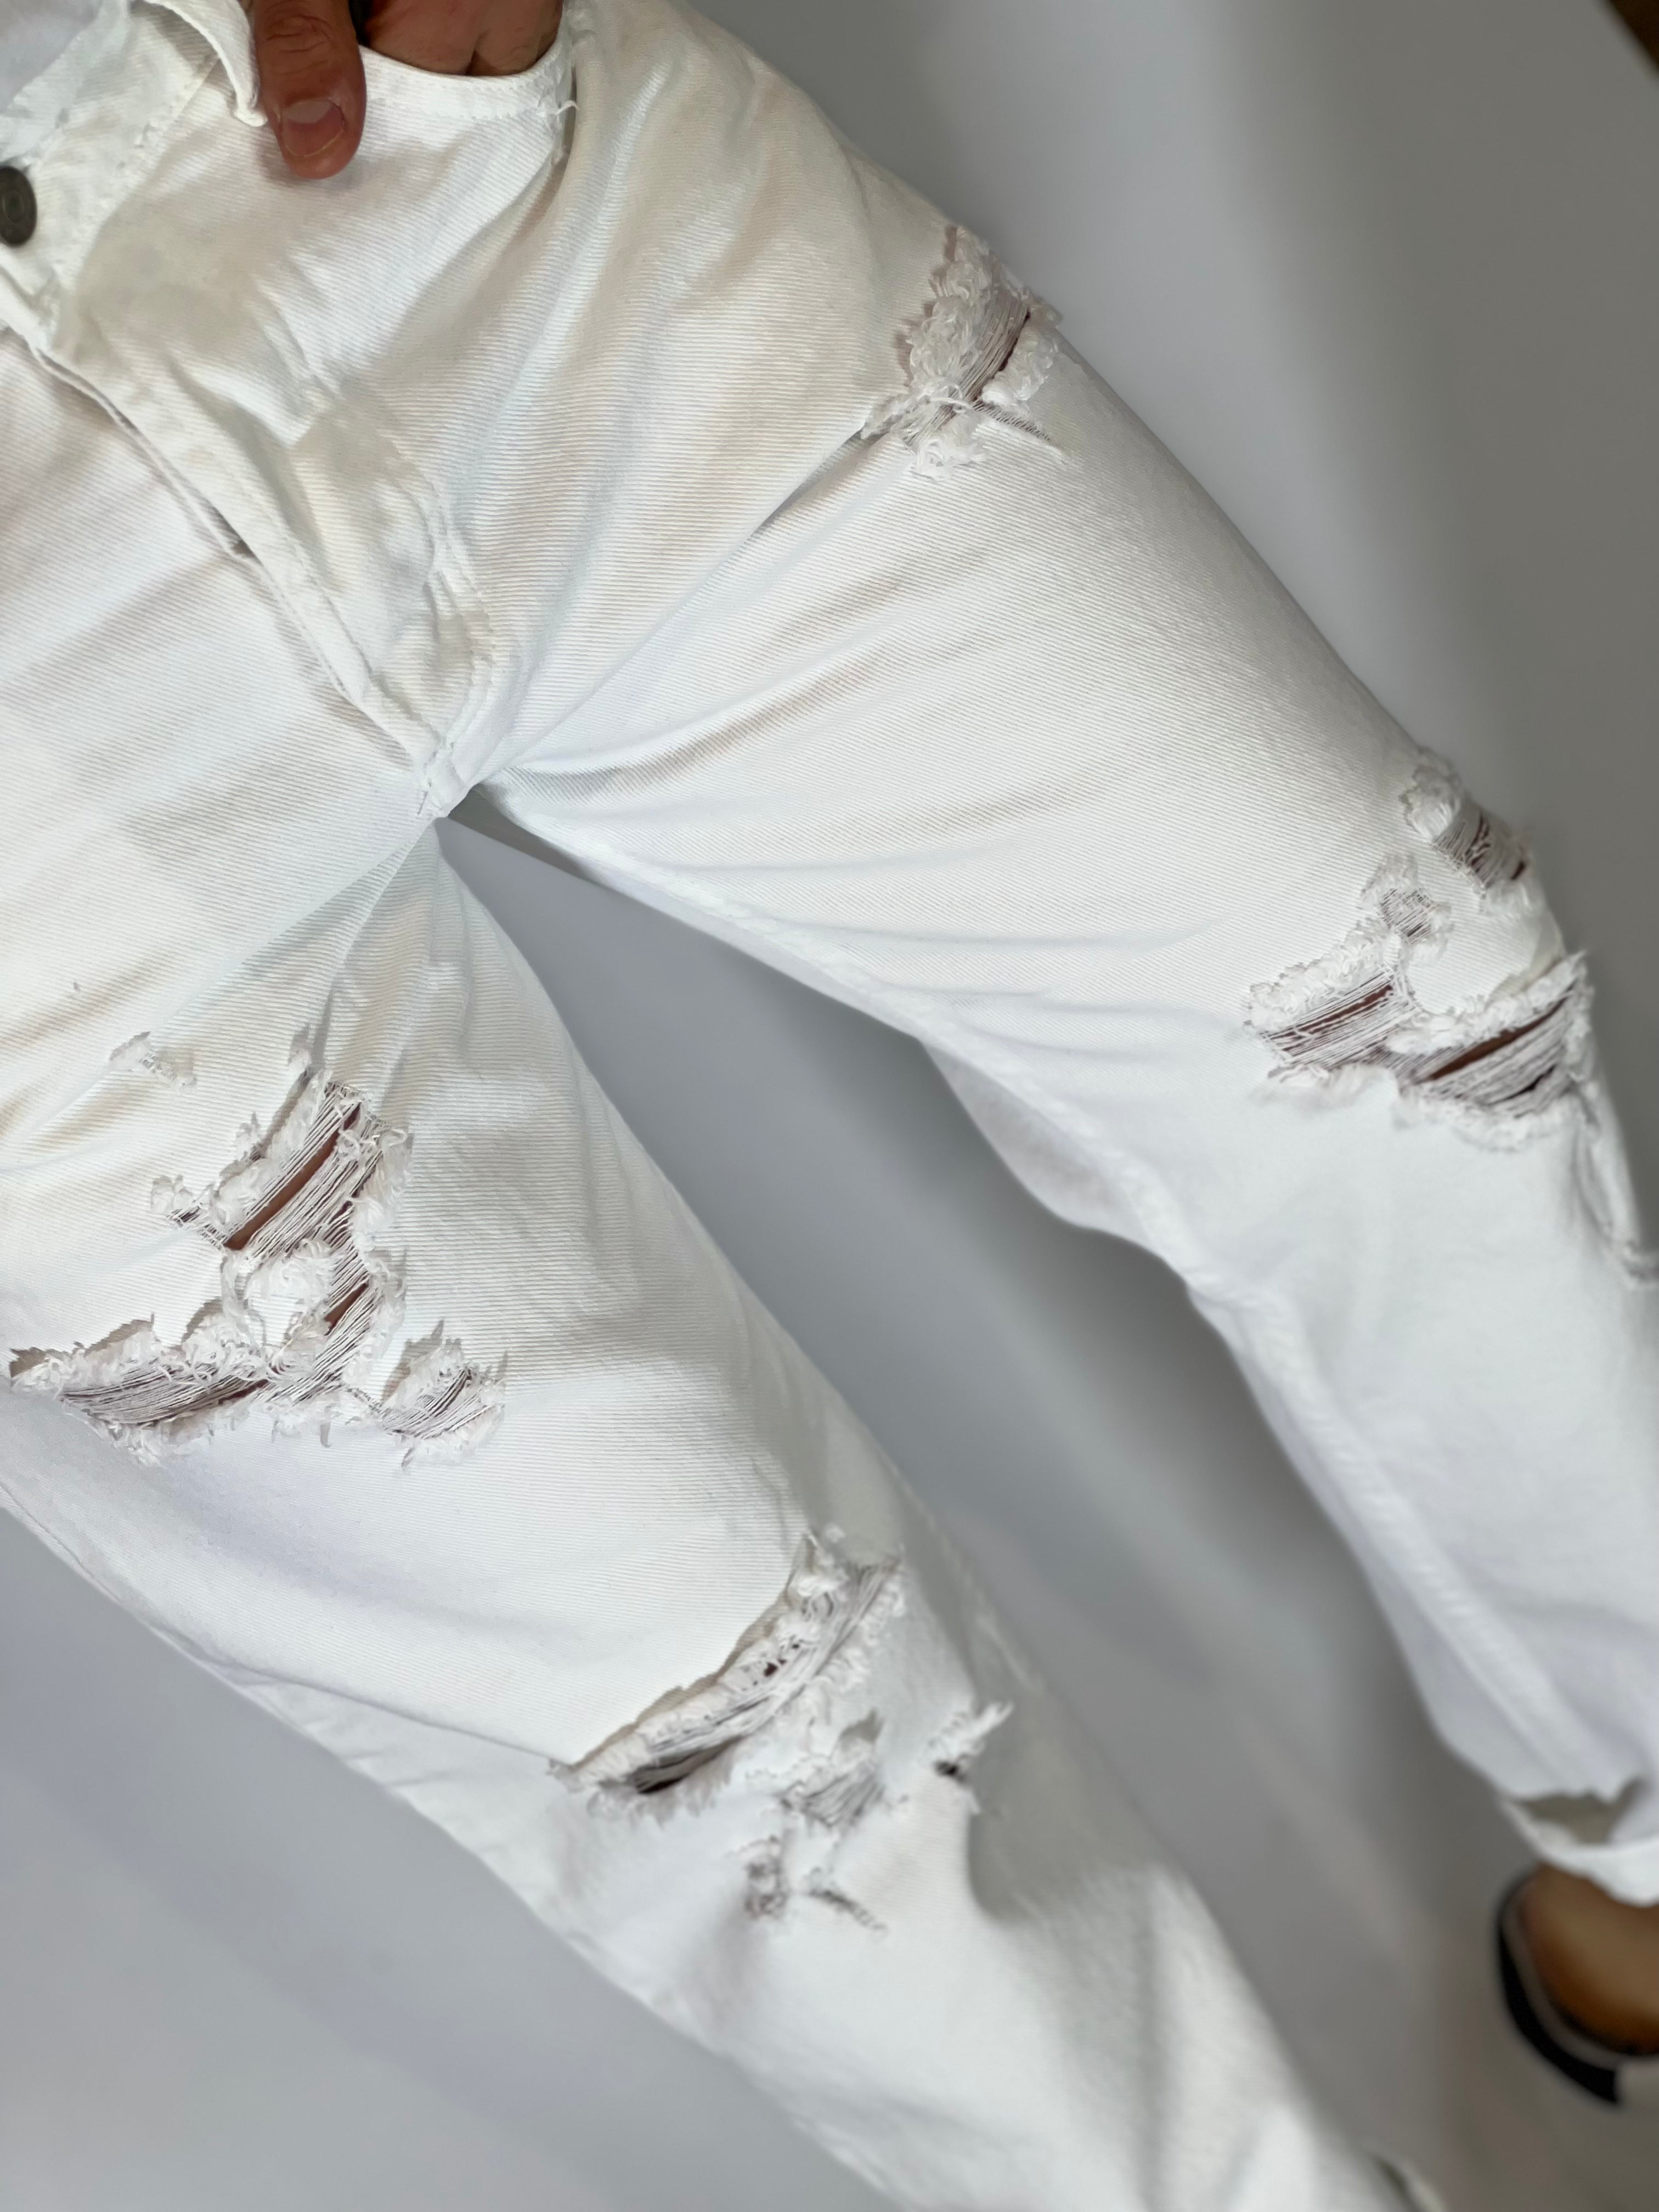 Pantalone loose fit bianco PONTE15-01